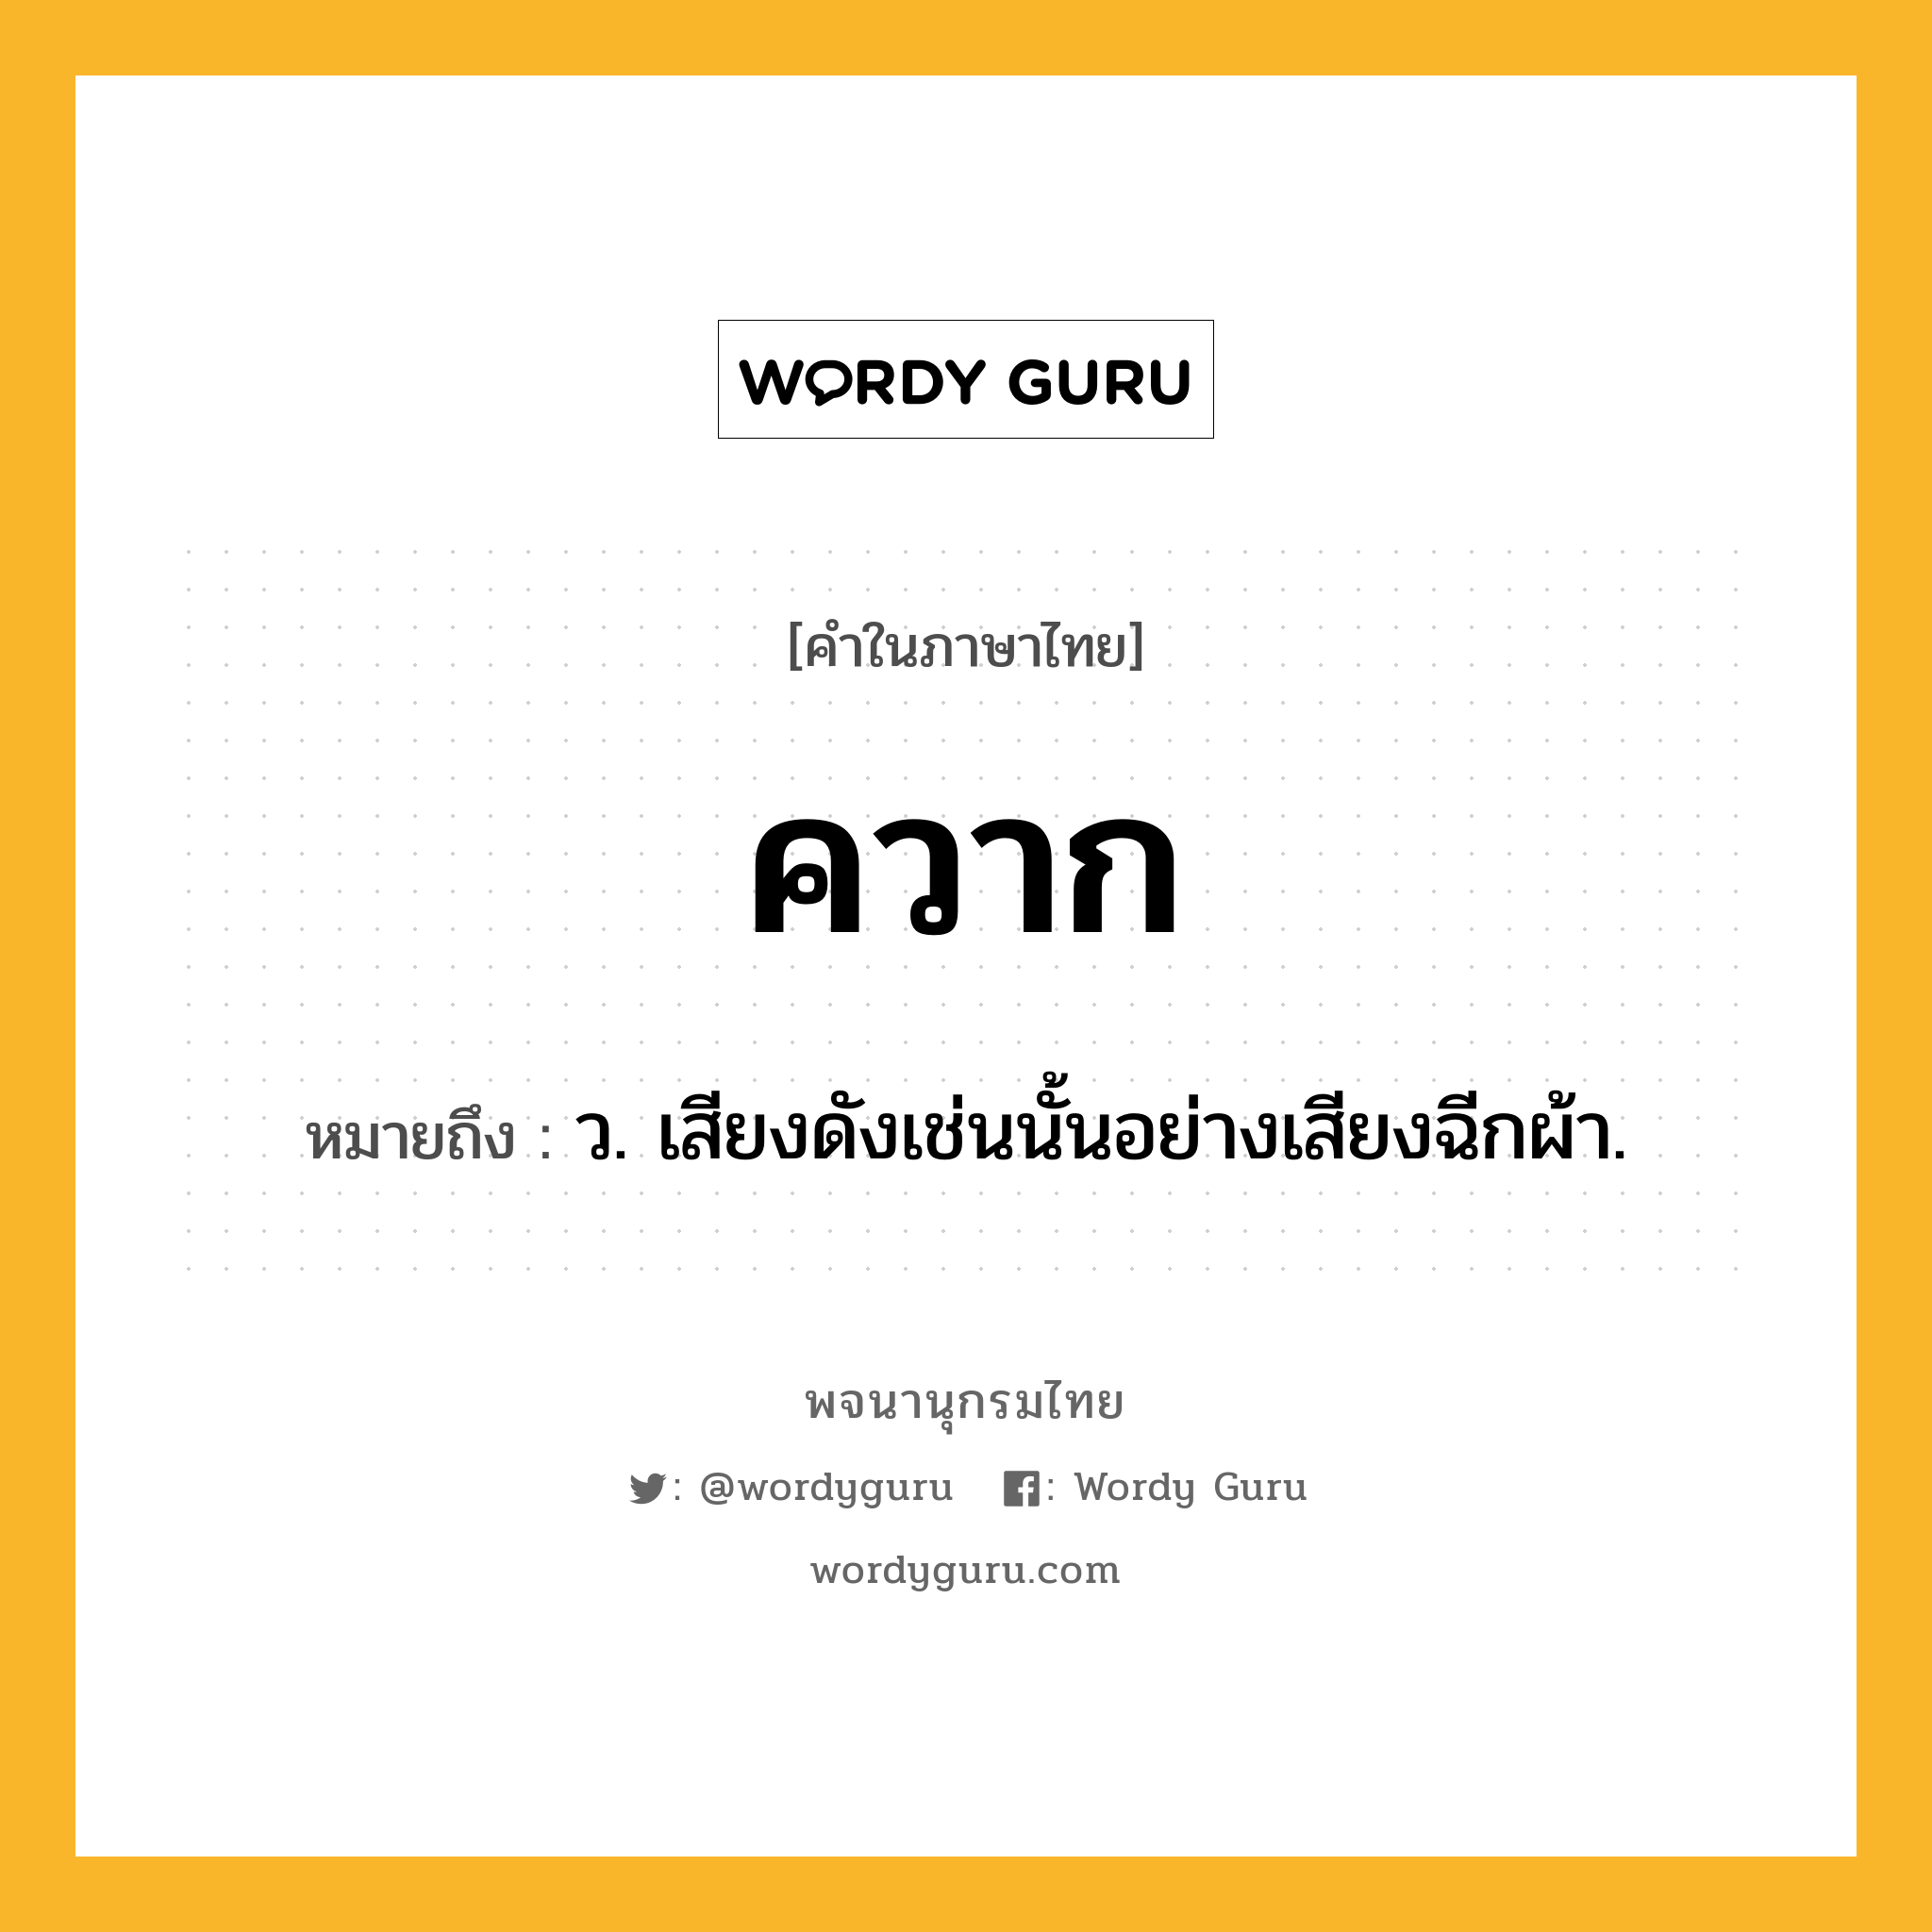 ควาก ความหมาย หมายถึงอะไร?, คำในภาษาไทย ควาก หมายถึง ว. เสียงดังเช่นนั้นอย่างเสียงฉีกผ้า.